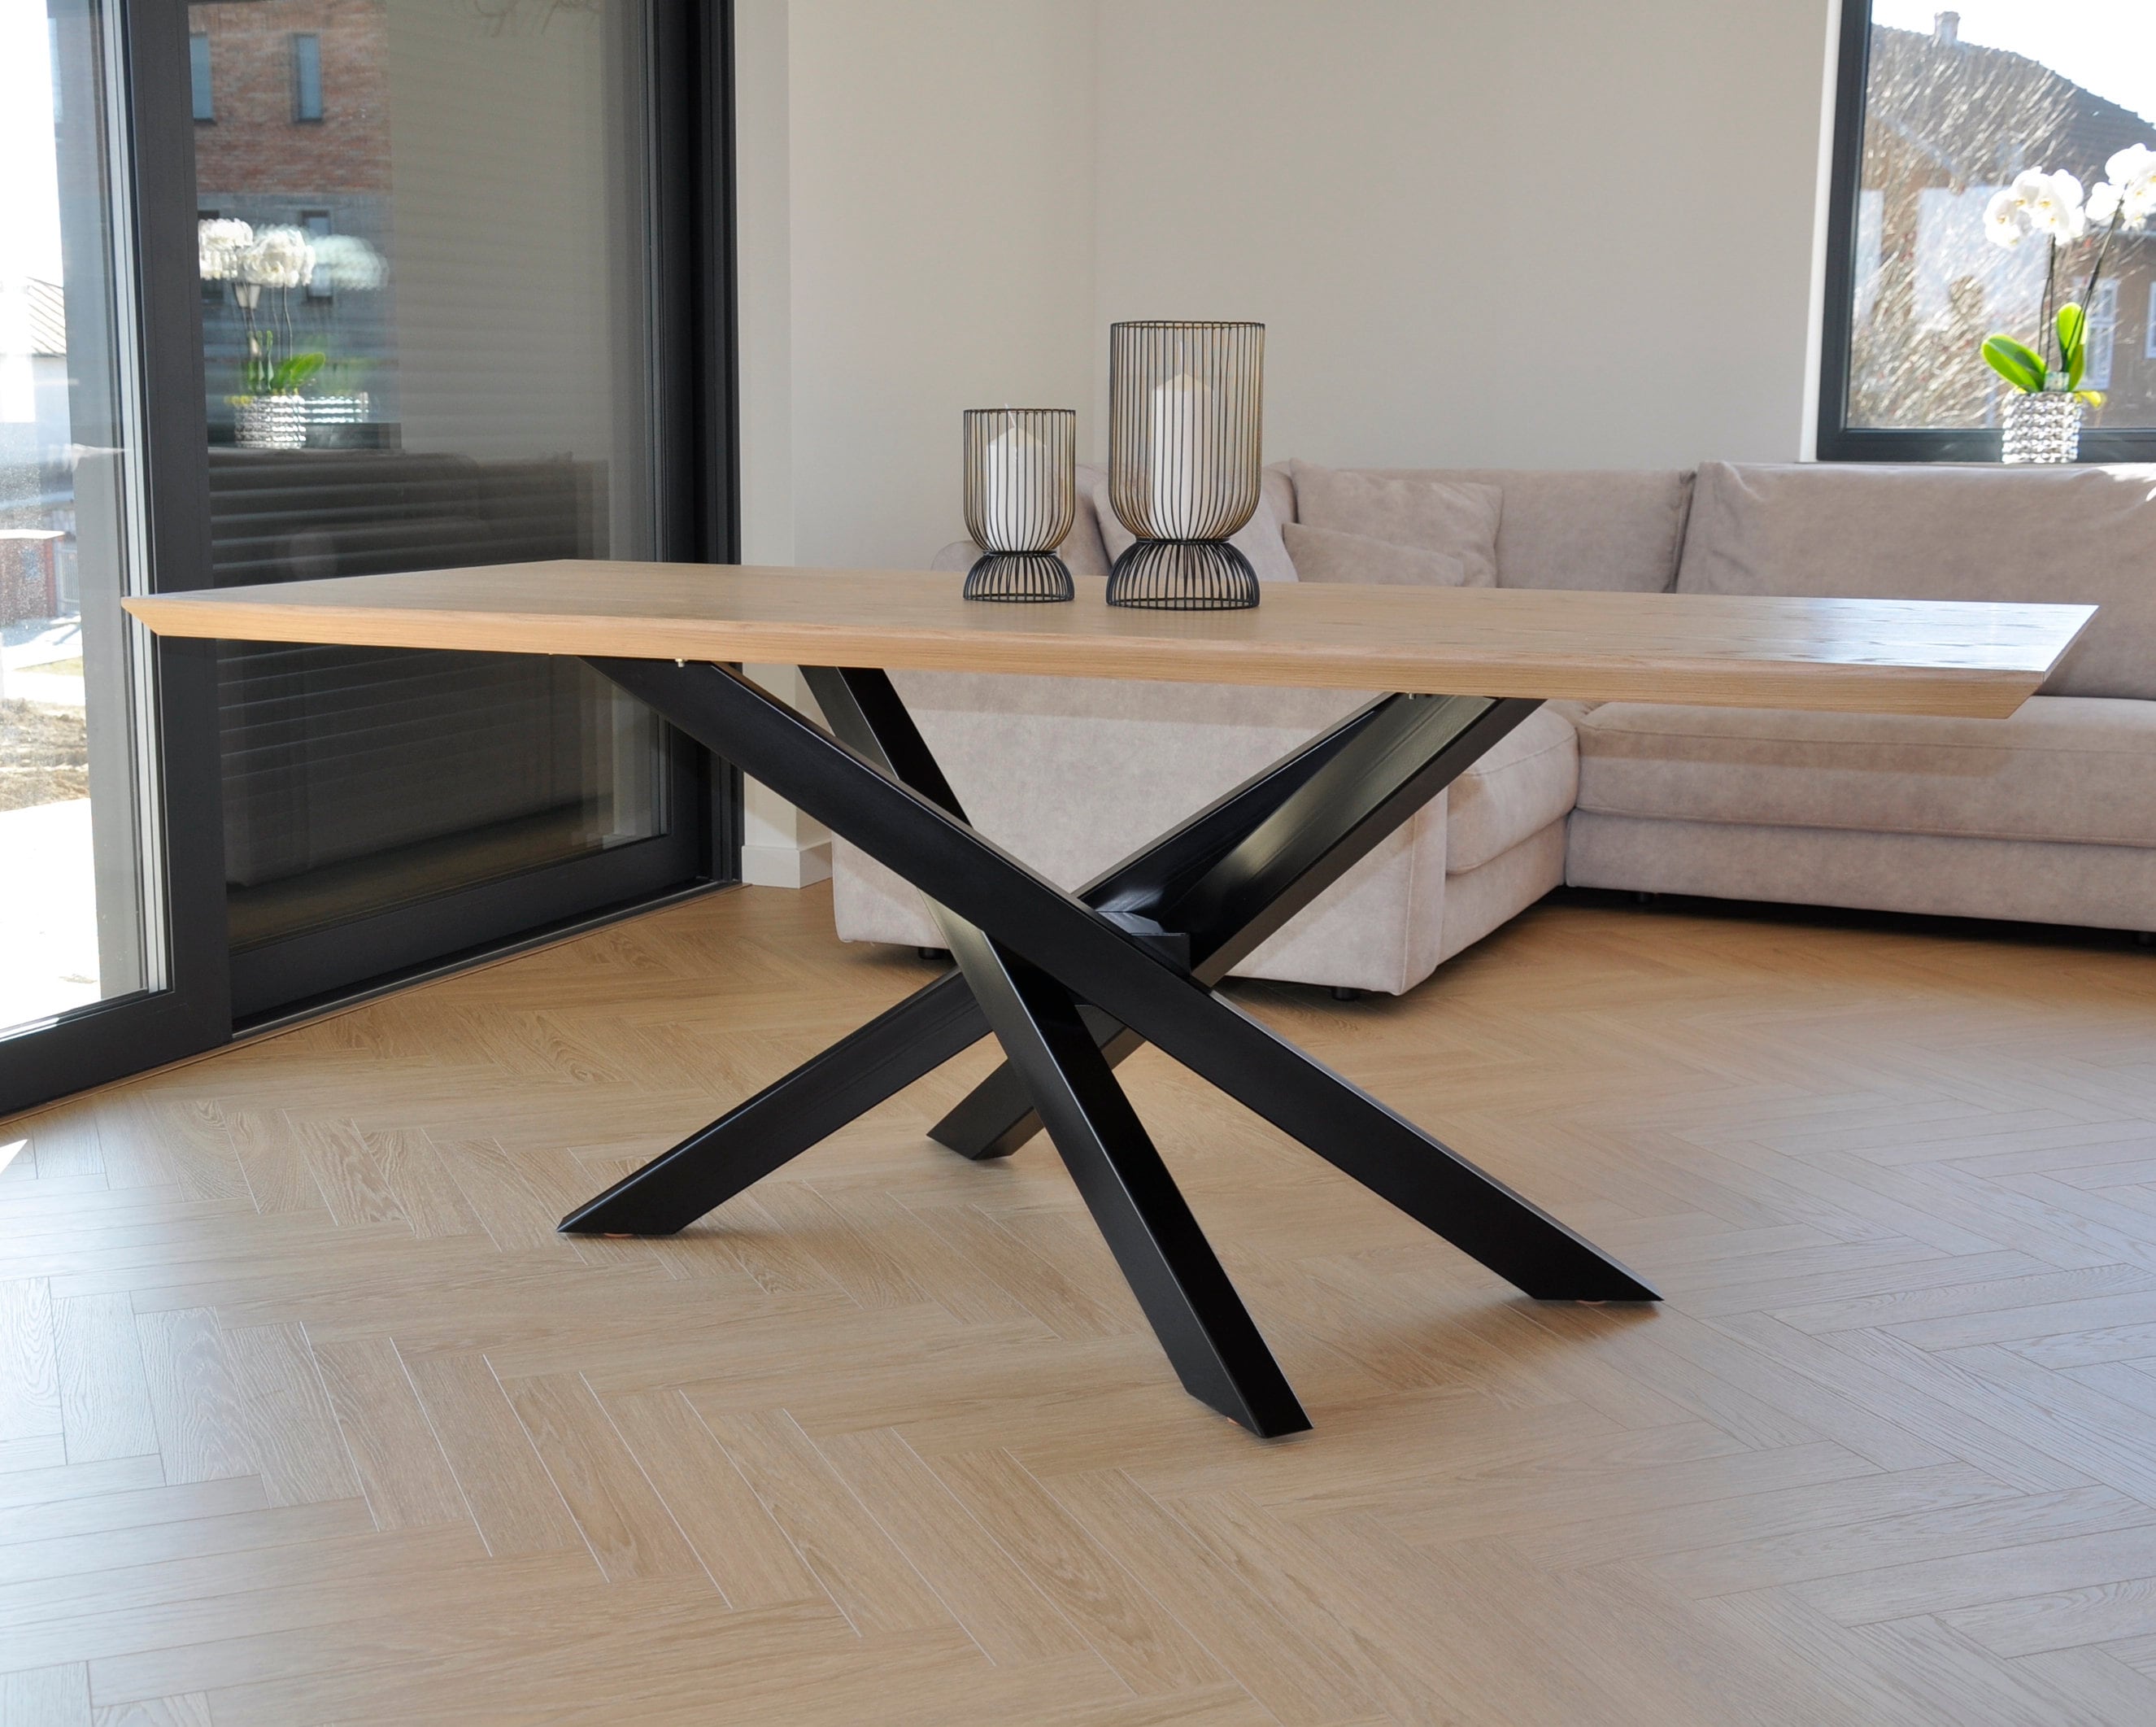 Patas rectangulares en forma de araña para mesa de comedor, patas de metal  industrial trustico, patas modernas para muebles, decoración rústica